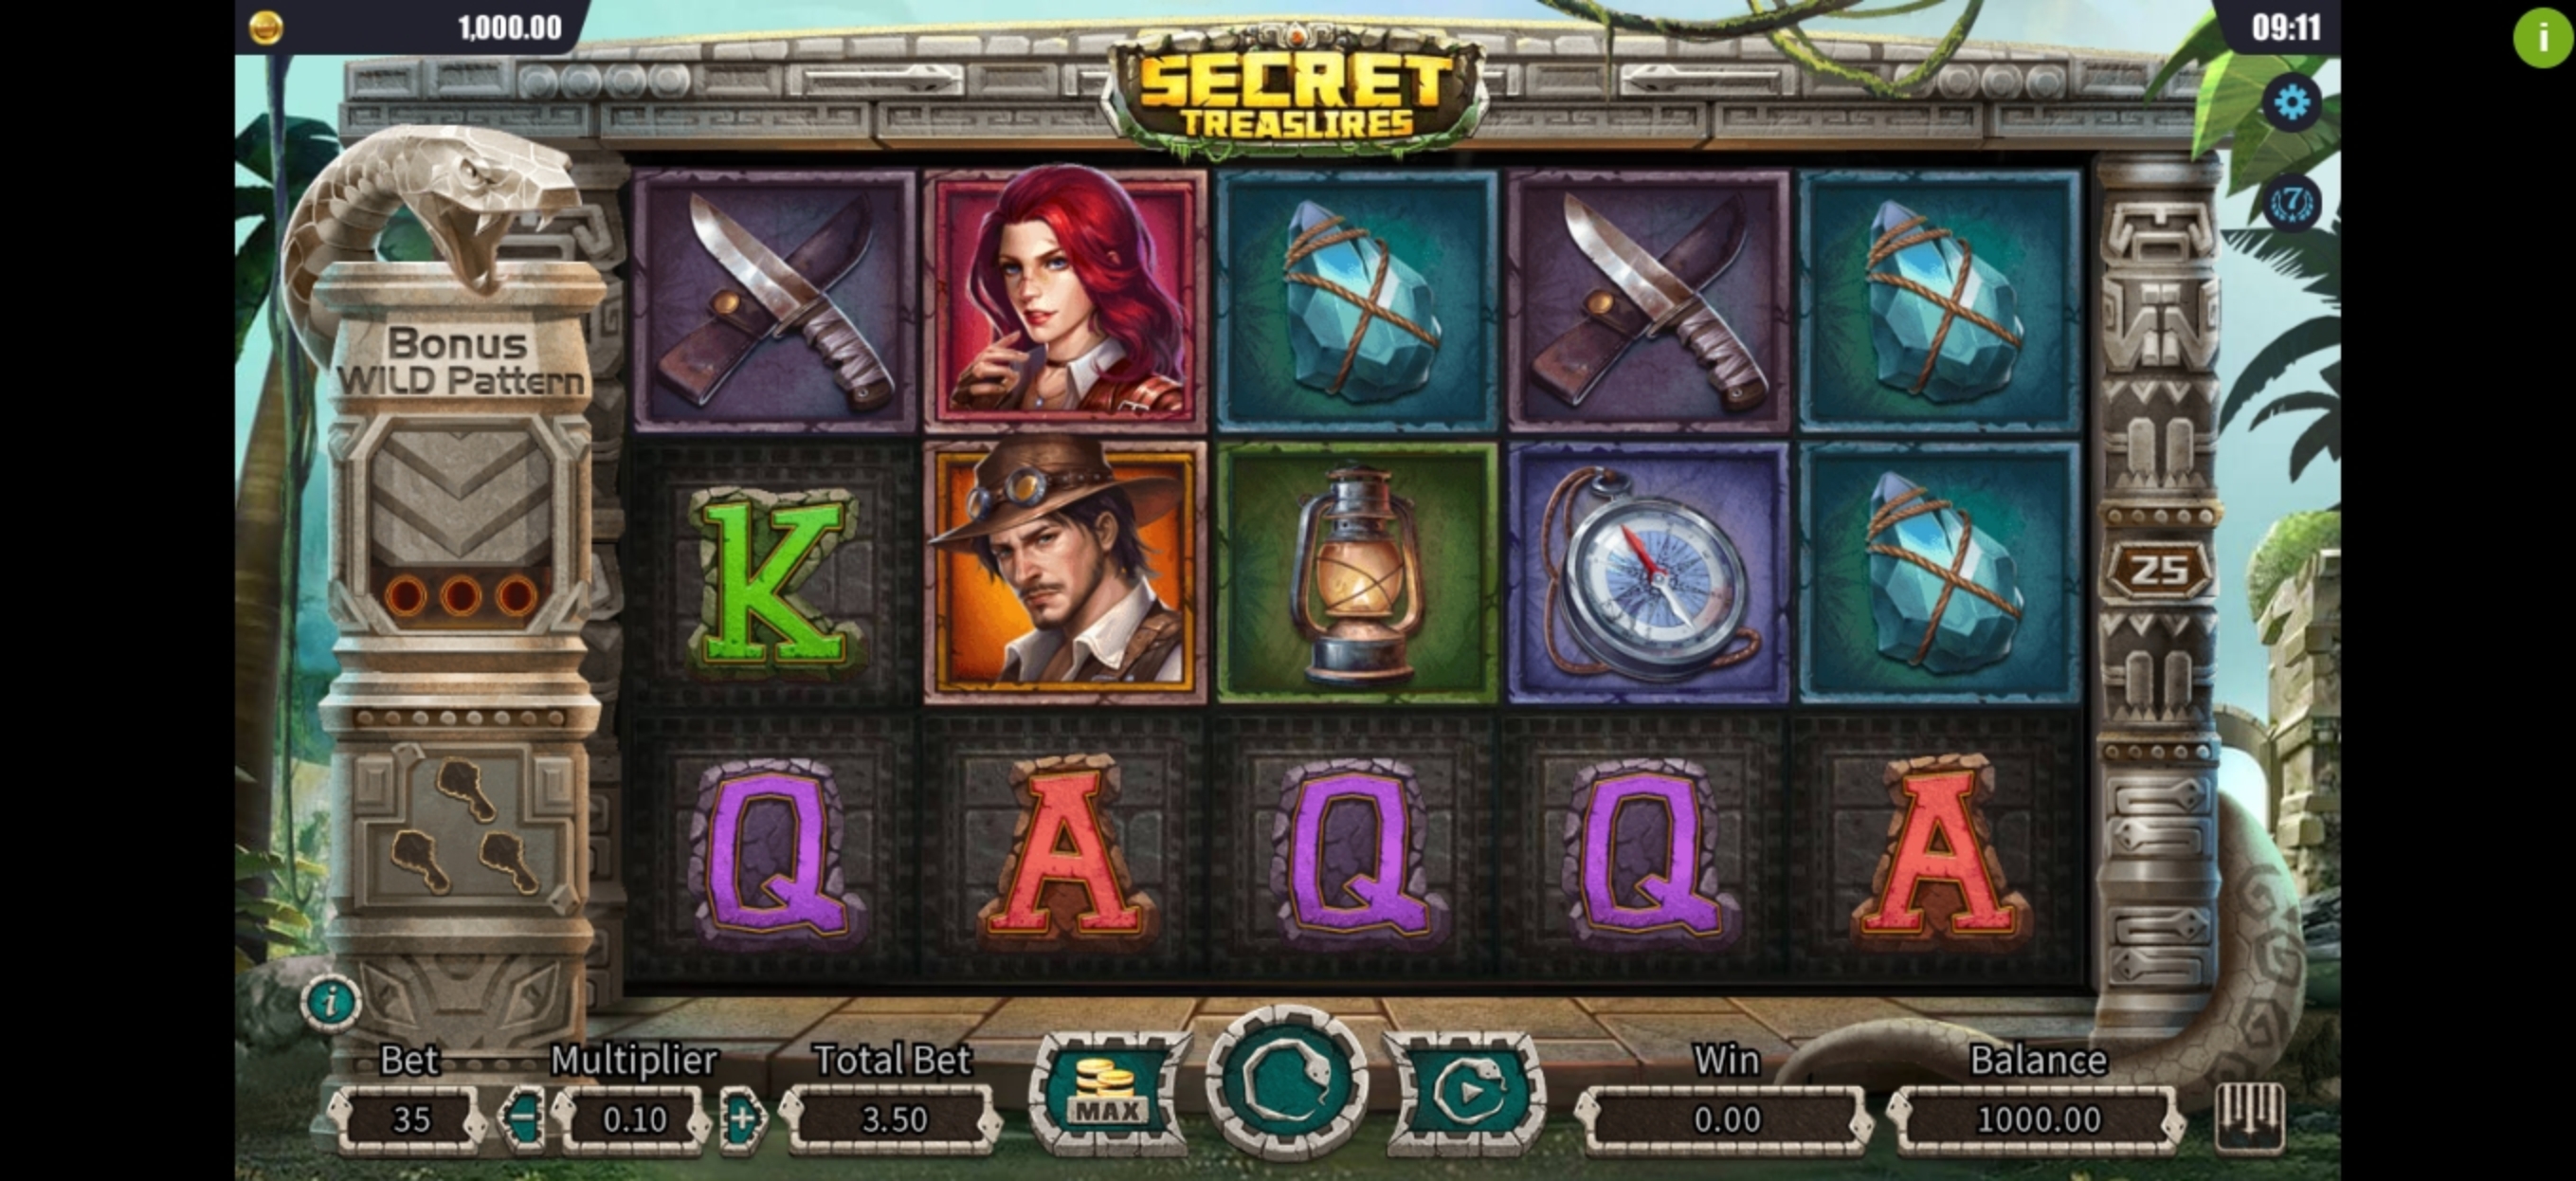 Reels in Secret Treasures Slot Game by Dreamtech Gaming